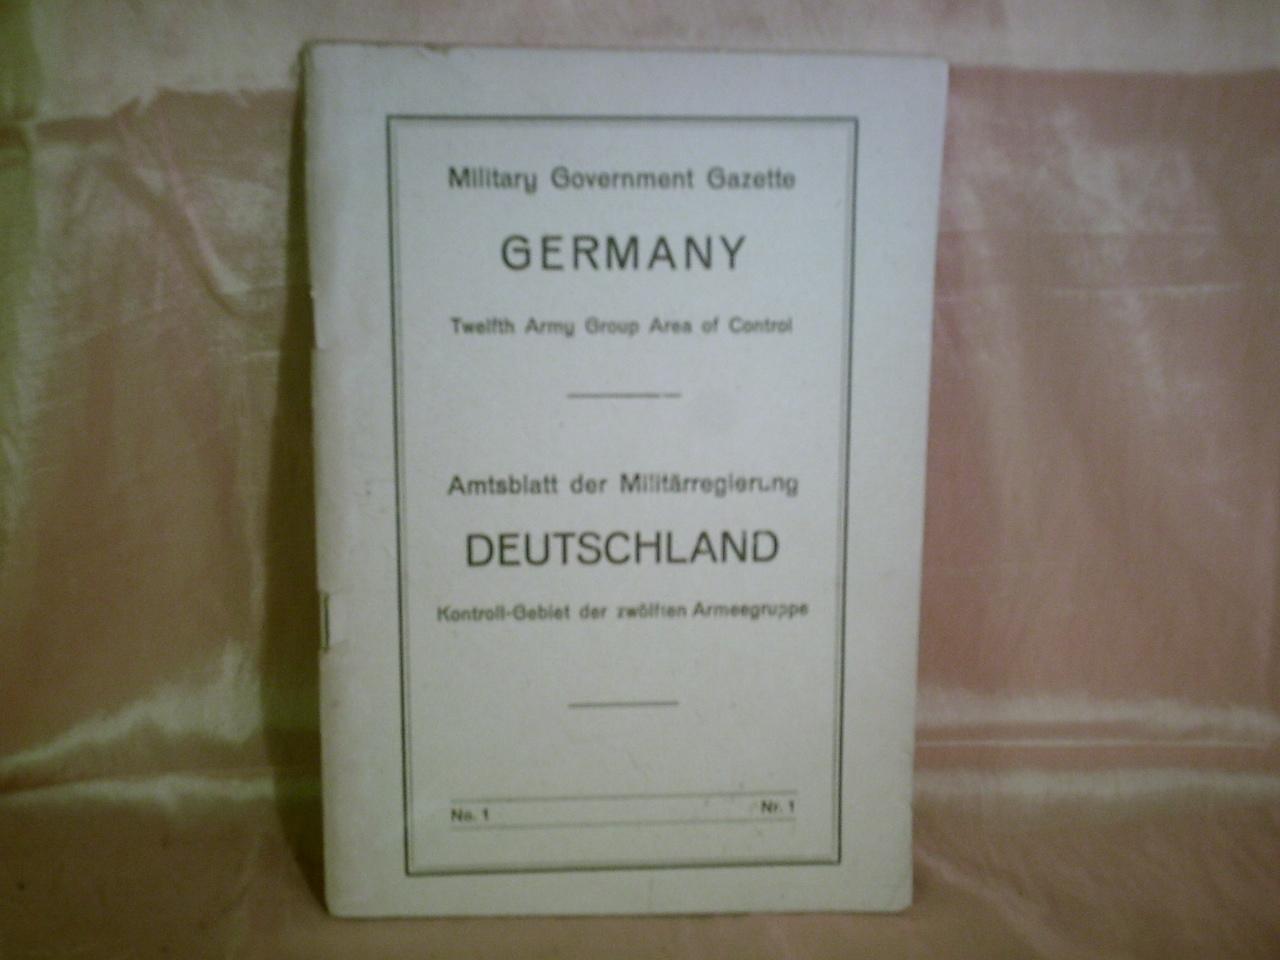 Amtsblatt der Militärregierung Deutschland Kontroll-Gebiet der zwölften Armeegruppe Nr. 1